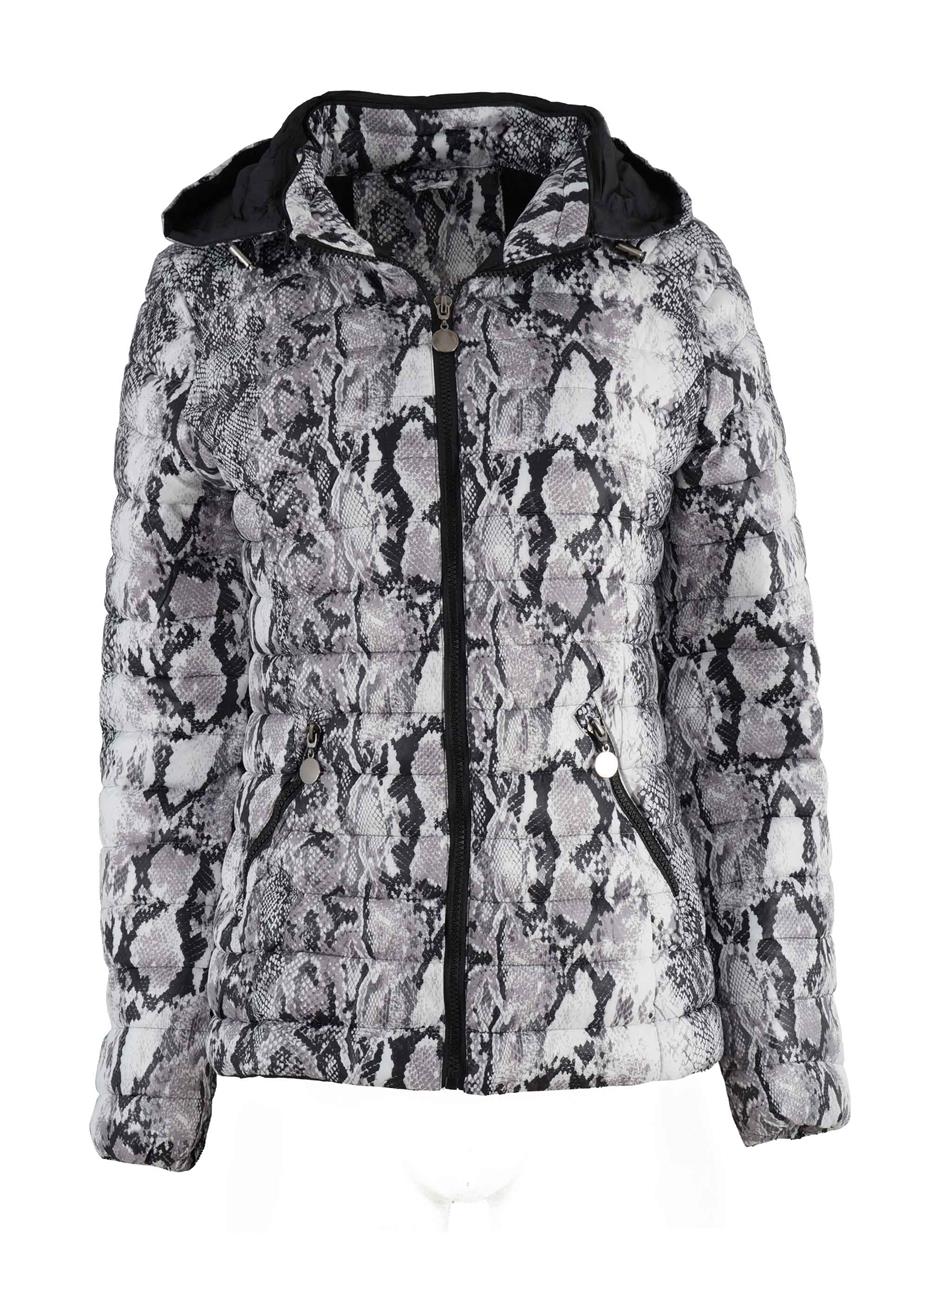 Γυναικείο μπουφάν jacket print-animal.Advanced style